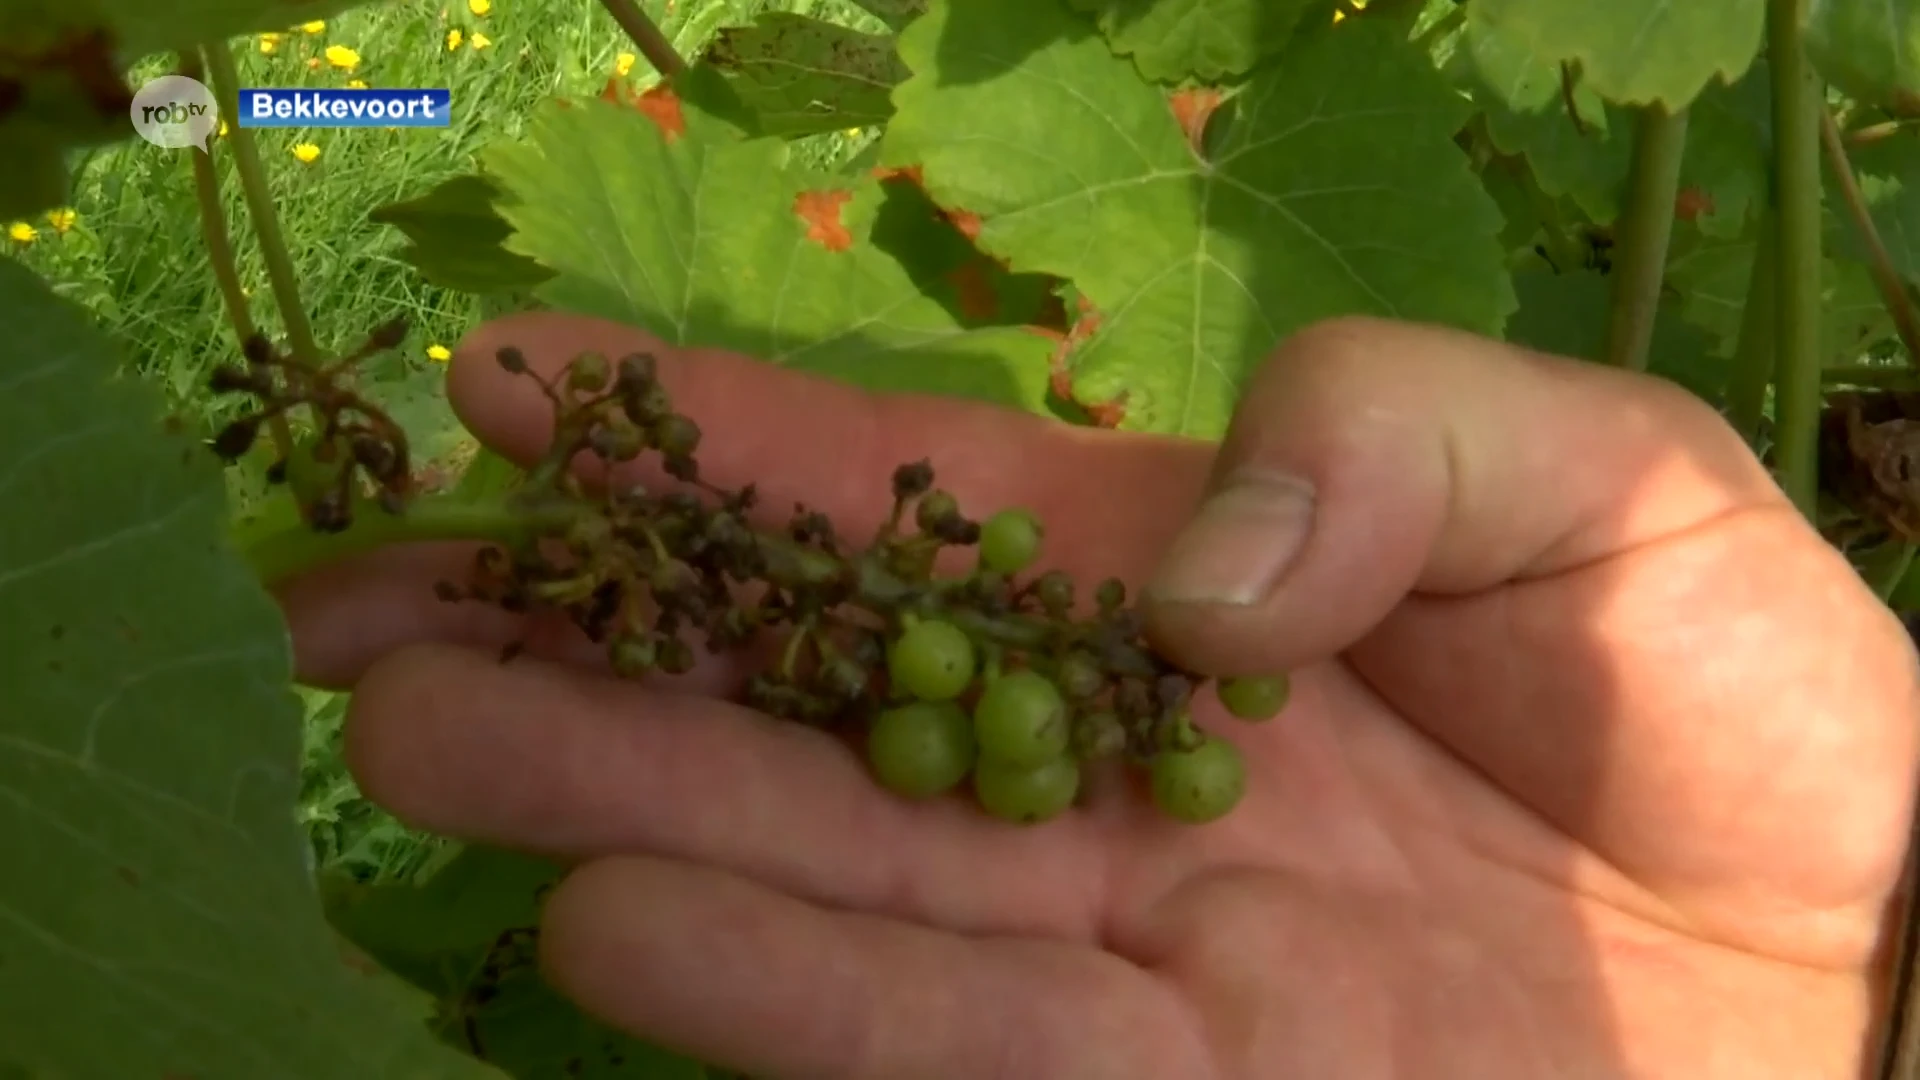 Noodweer teistert ook wijnbouwers in onze regio: "Soms tot zelfs 60% van oogst kwijt"